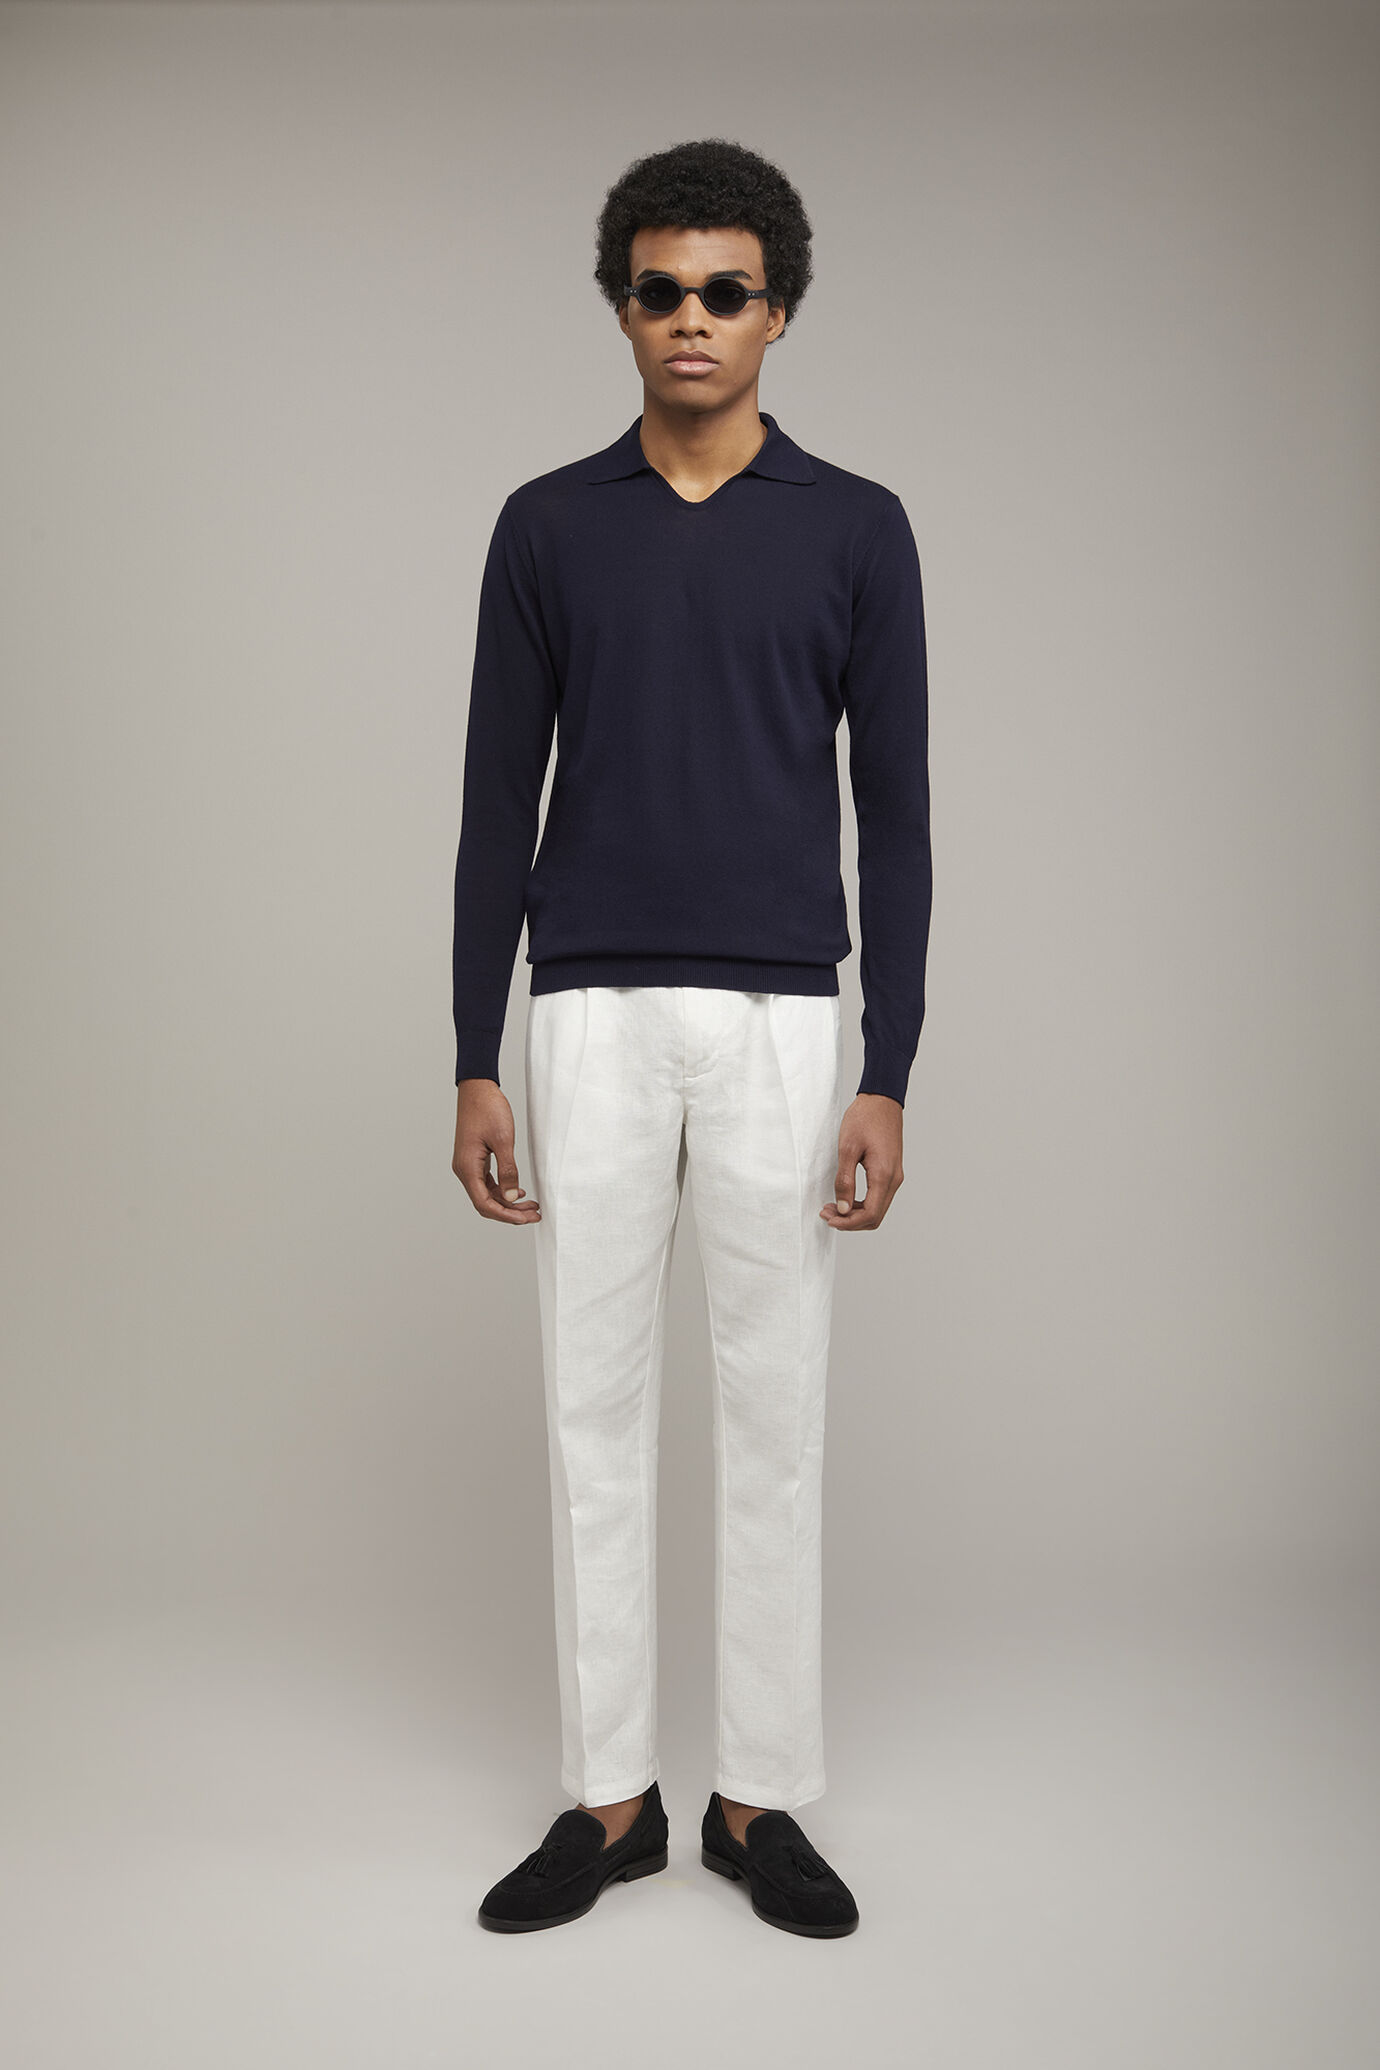 Herren-Poloshirt mit V-Ausschnitt aus 100 % Baumwollstrick und langen Ärmeln in normaler Passform image number 0